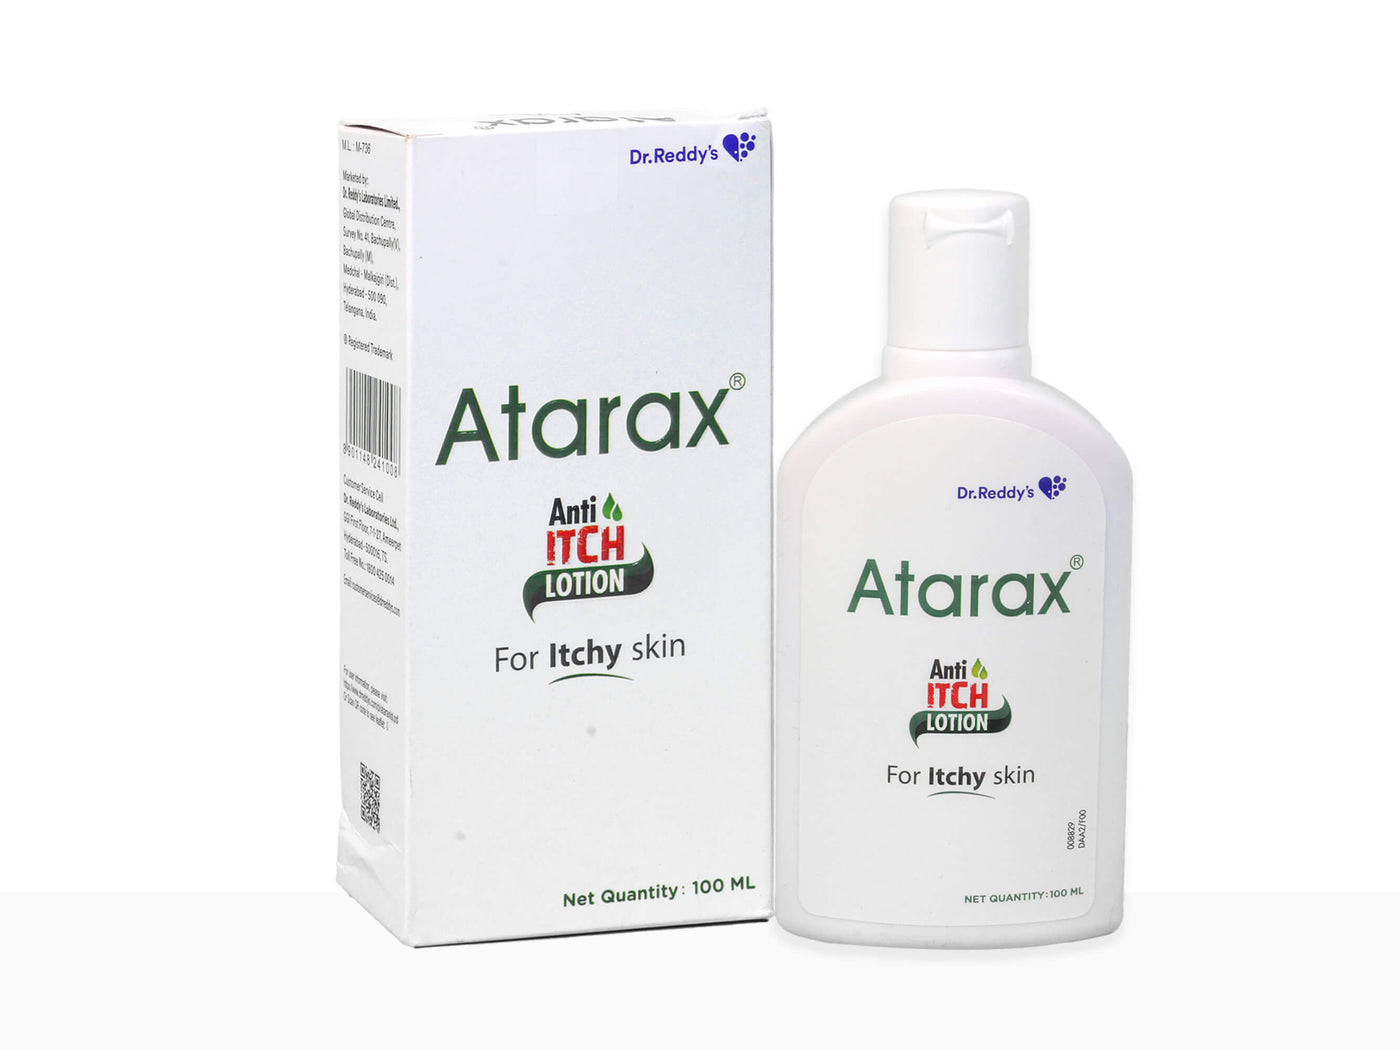 Atarax anti itch lotion - Clinikally